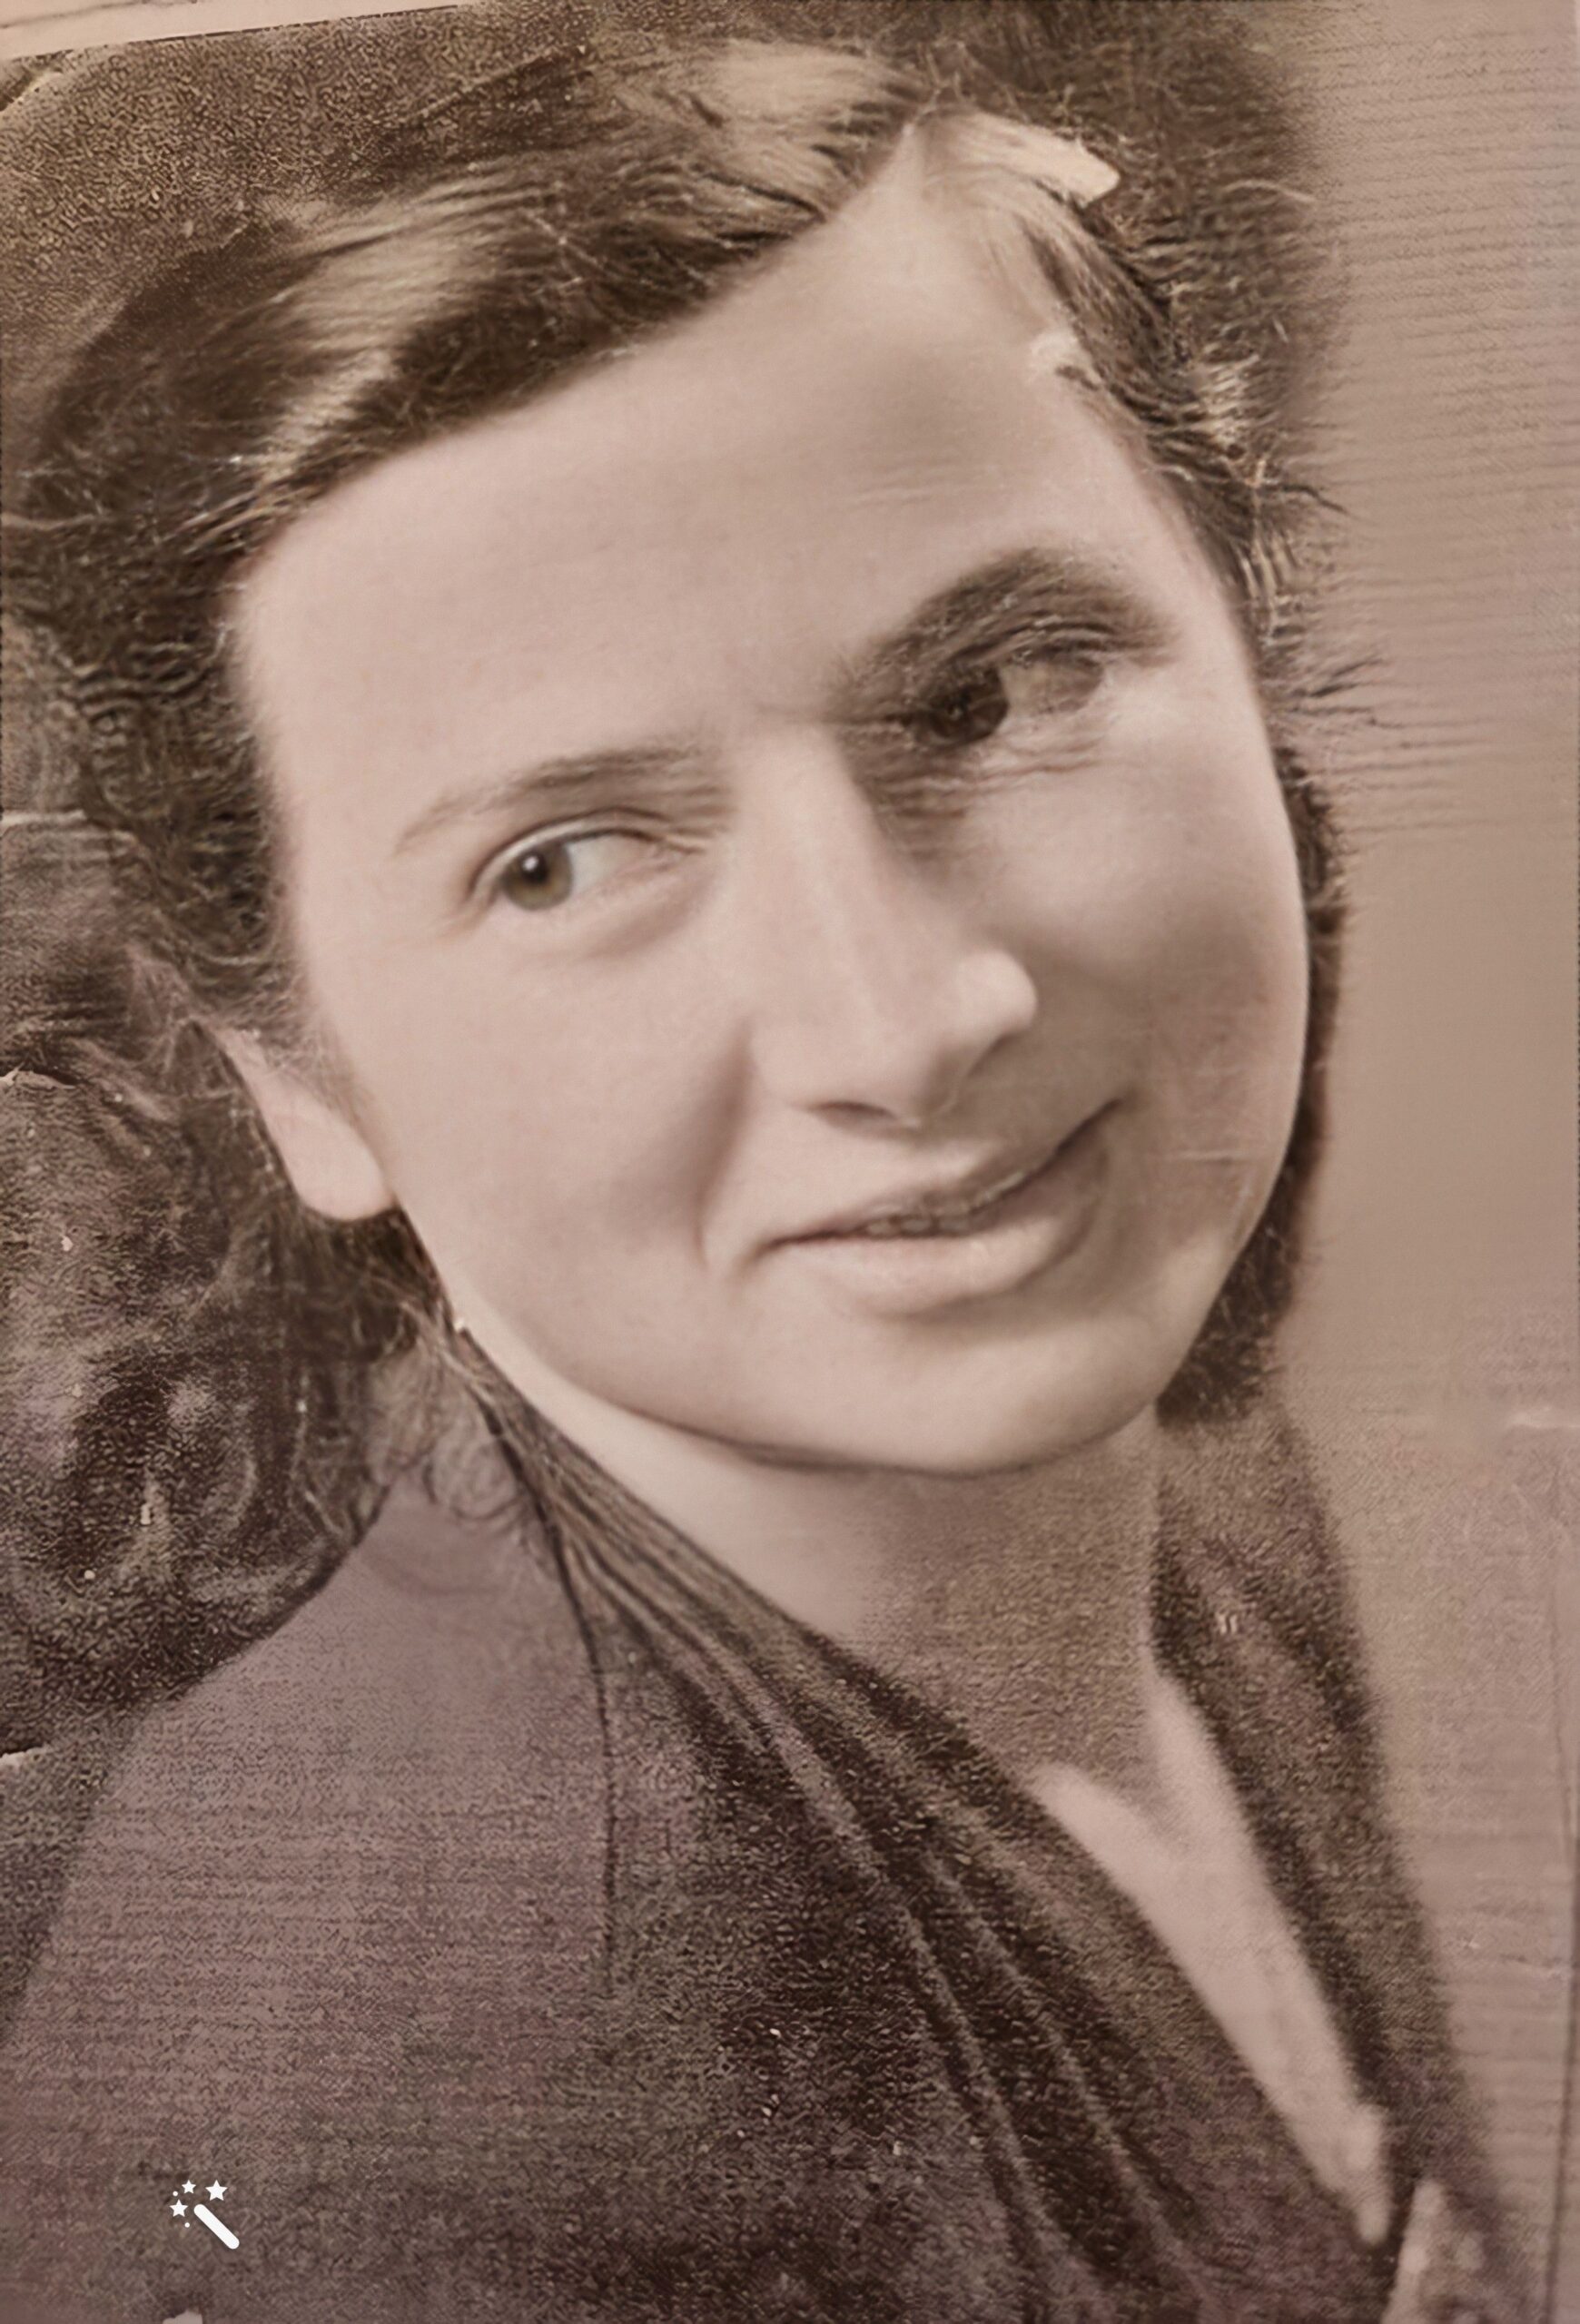 מרים, אמא של חנה לסלאו, בצעירותה (שיפור תמונה: MyHeritage)